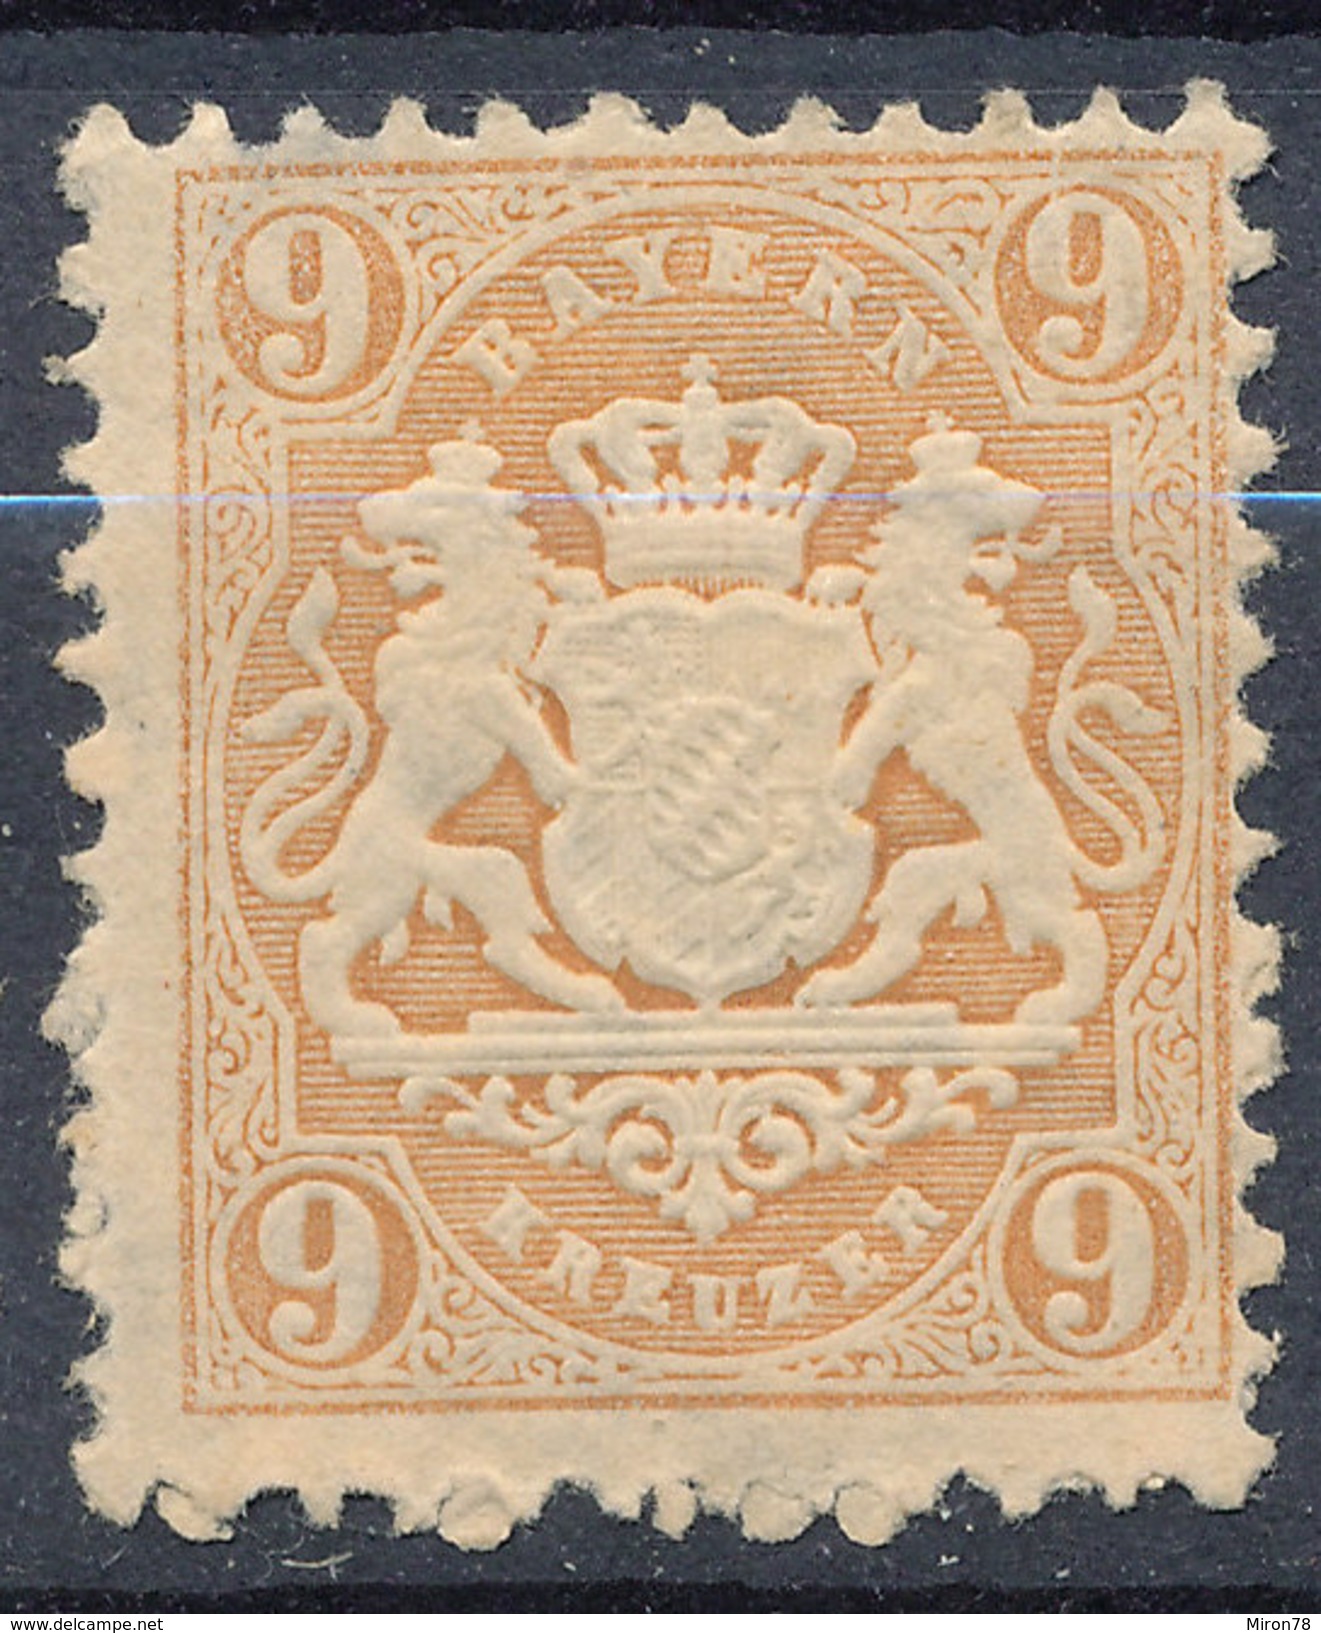 Stamp Bavaria 1870-75? 9kr Mint Lot#76 - Mint